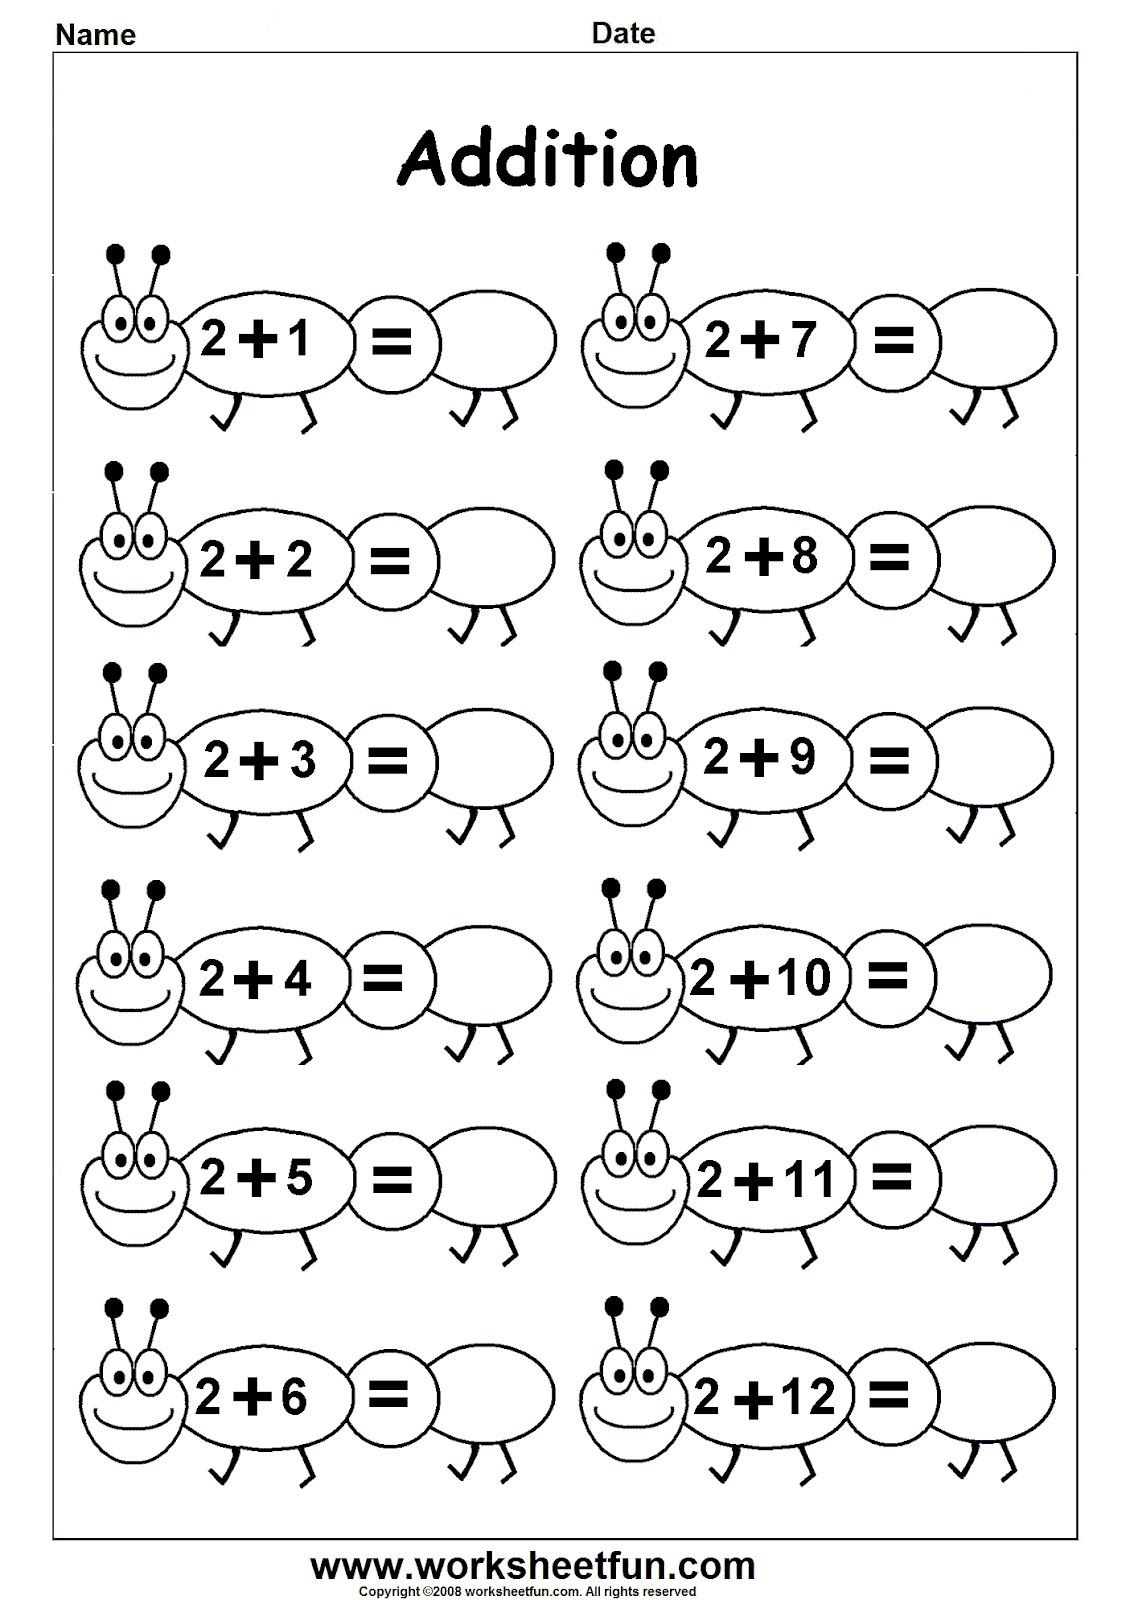 Worksheetfun - Free Printable Worksheets | Ethan School - Free Printable Worksheets For Kindergarten